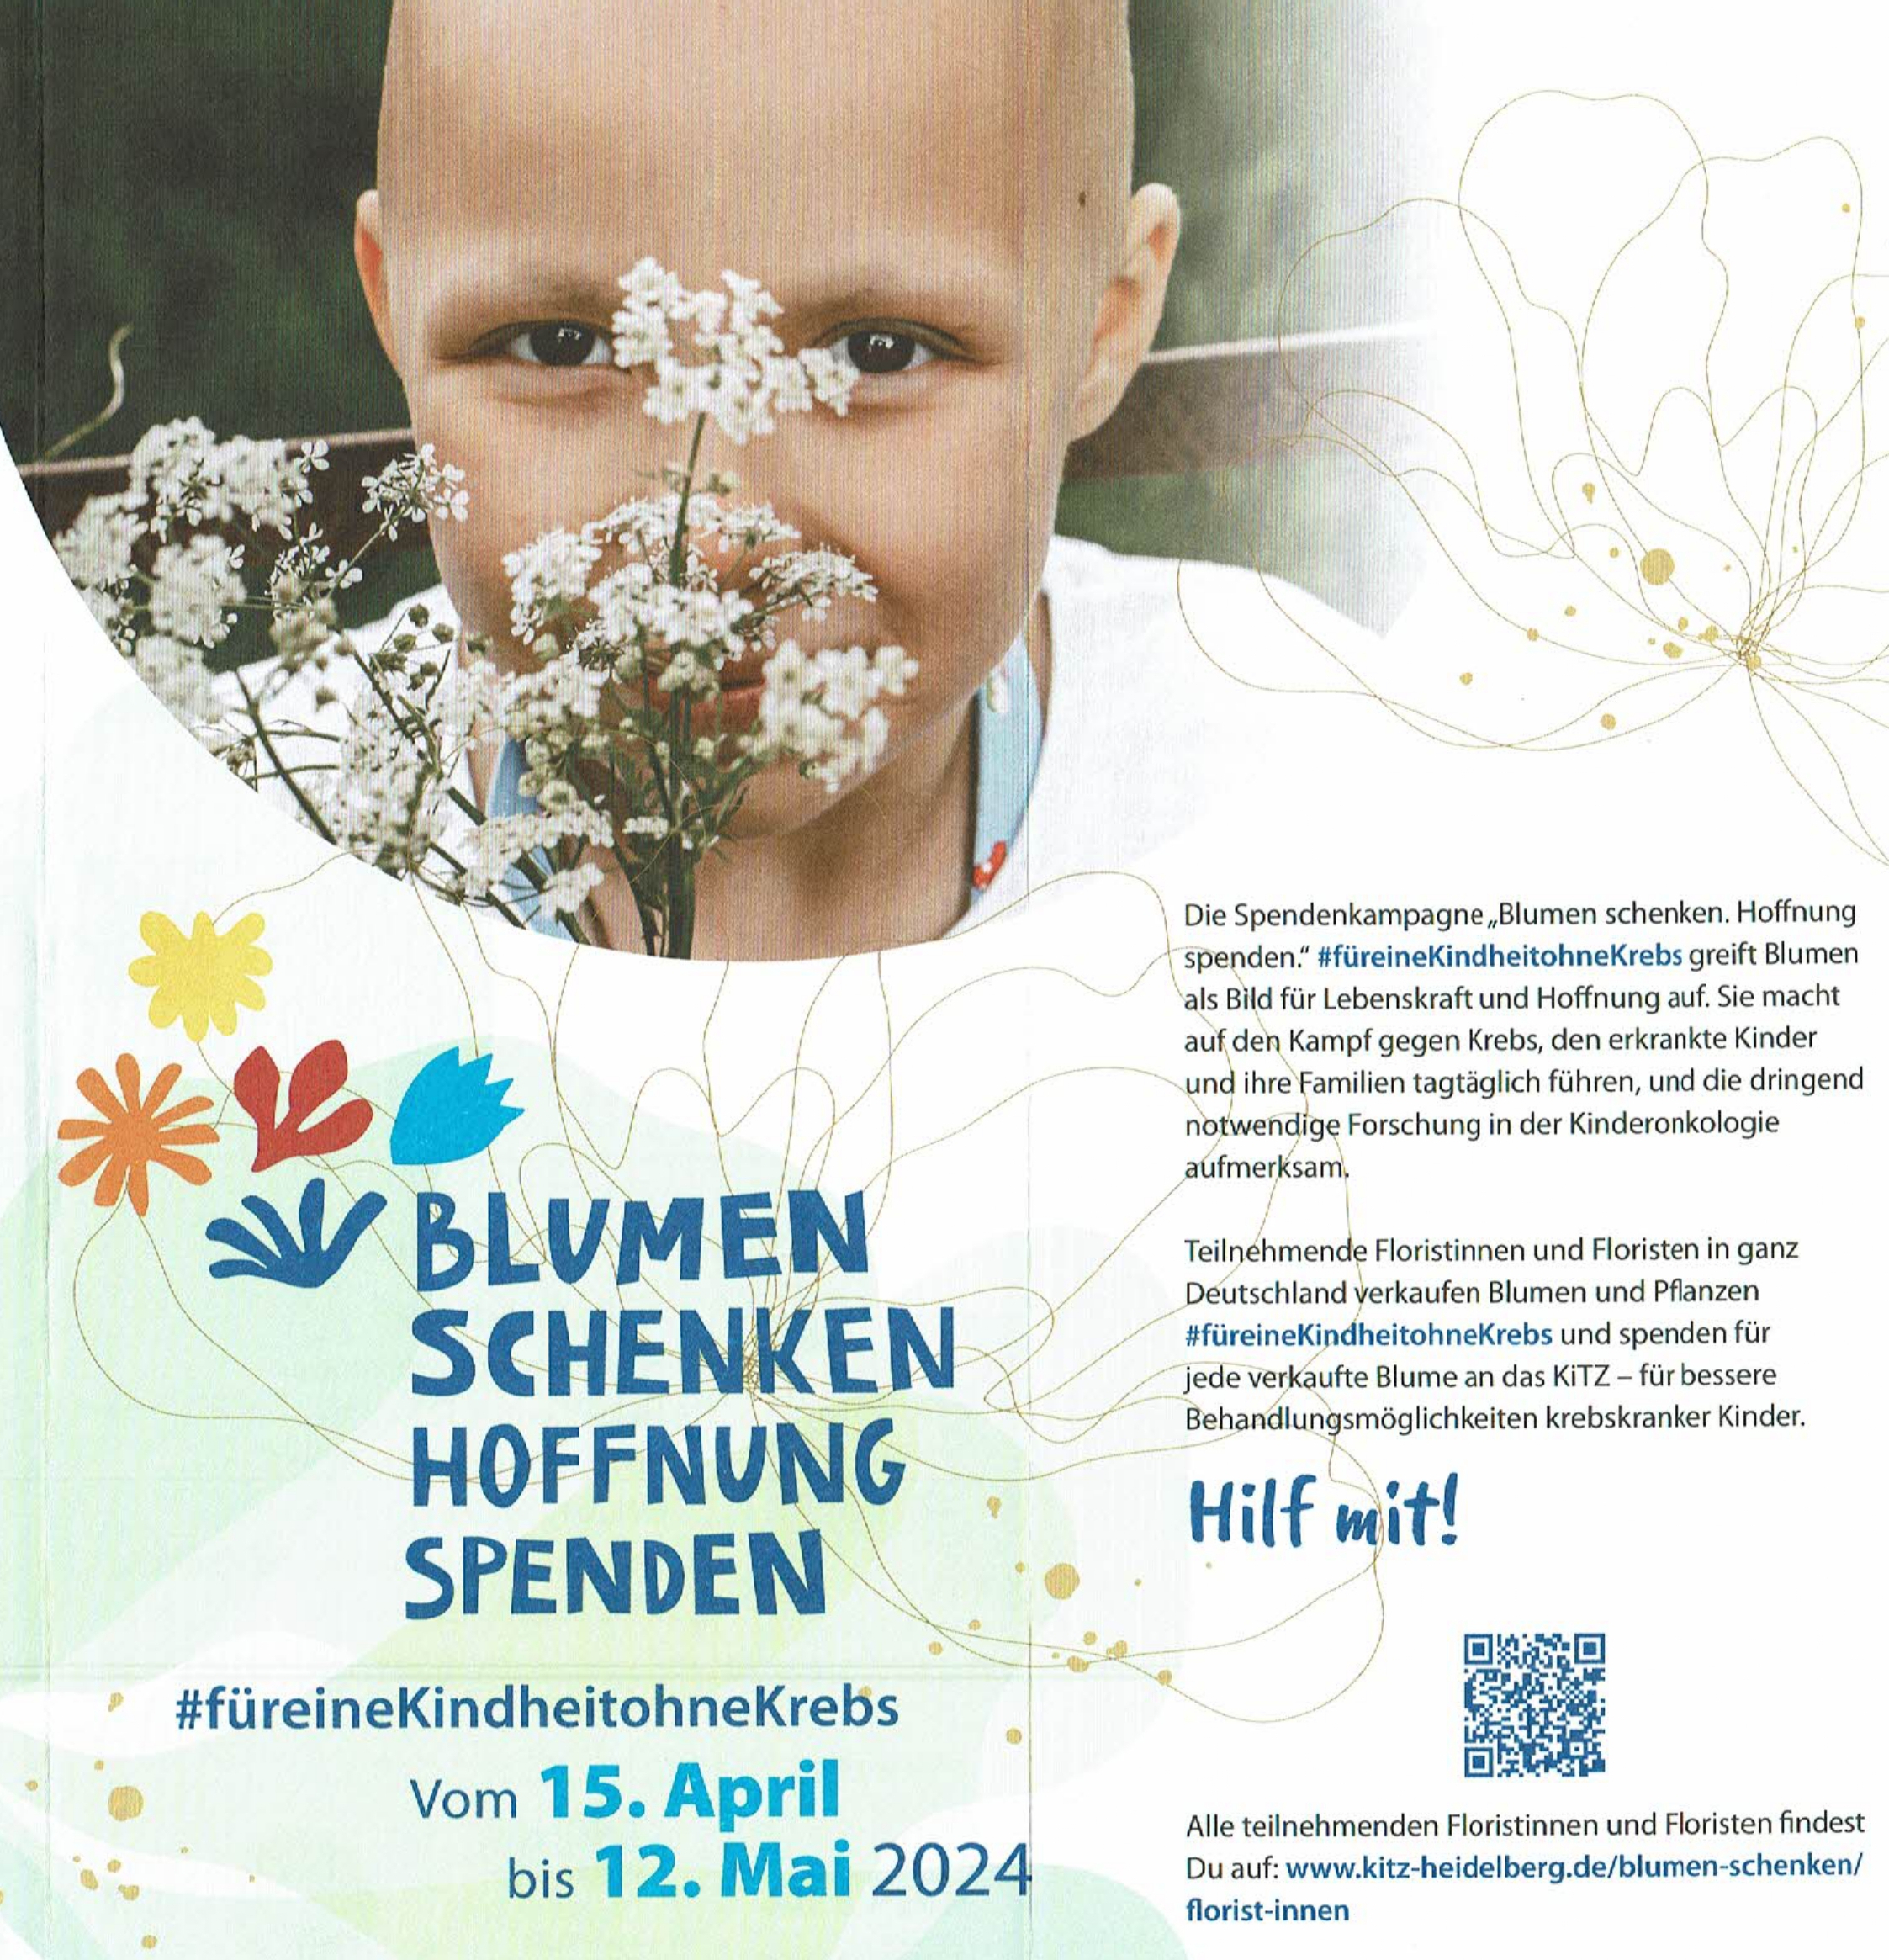 Blumen Schenken Hoffnung Spenden. Spendeaktion vom 15.04 bis 12.05